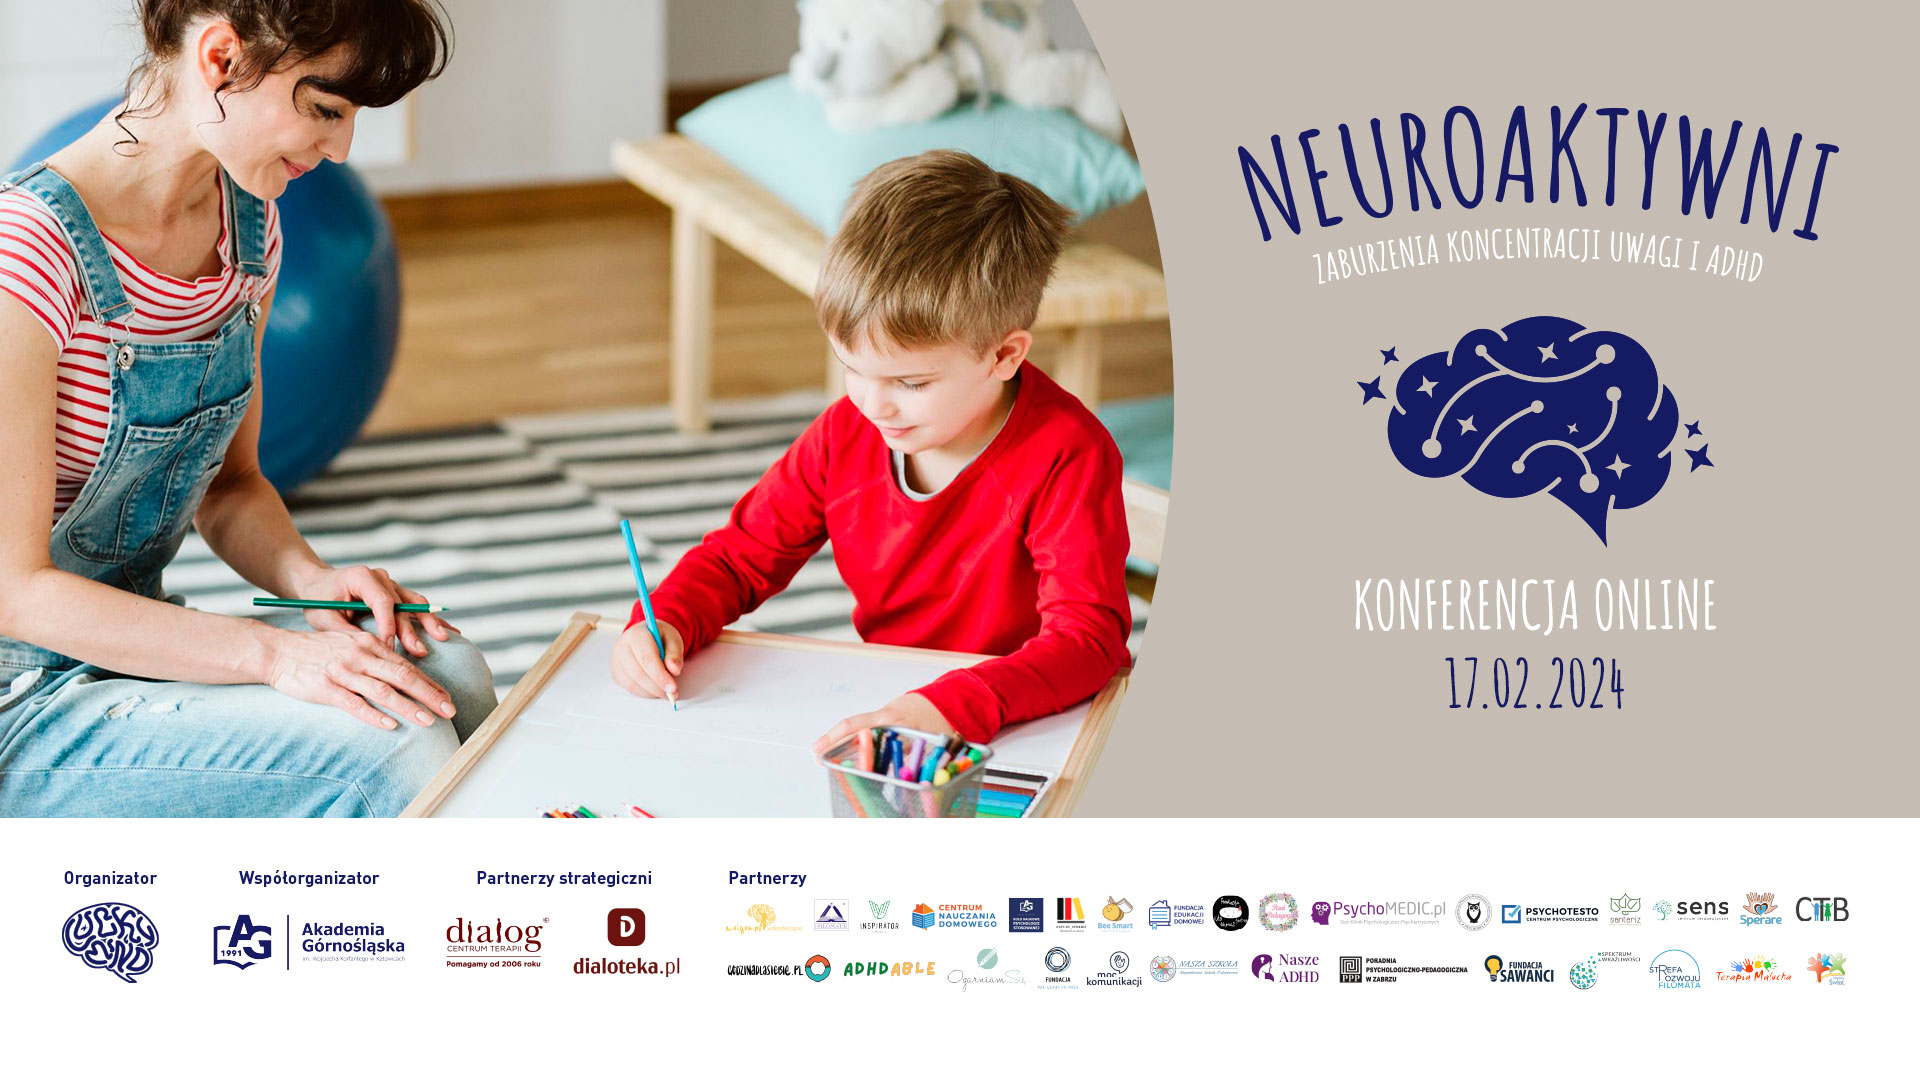 Konferencja “NeuroAKTYWNI – ZABURZENIA KONCENTRACJI I ADHD”